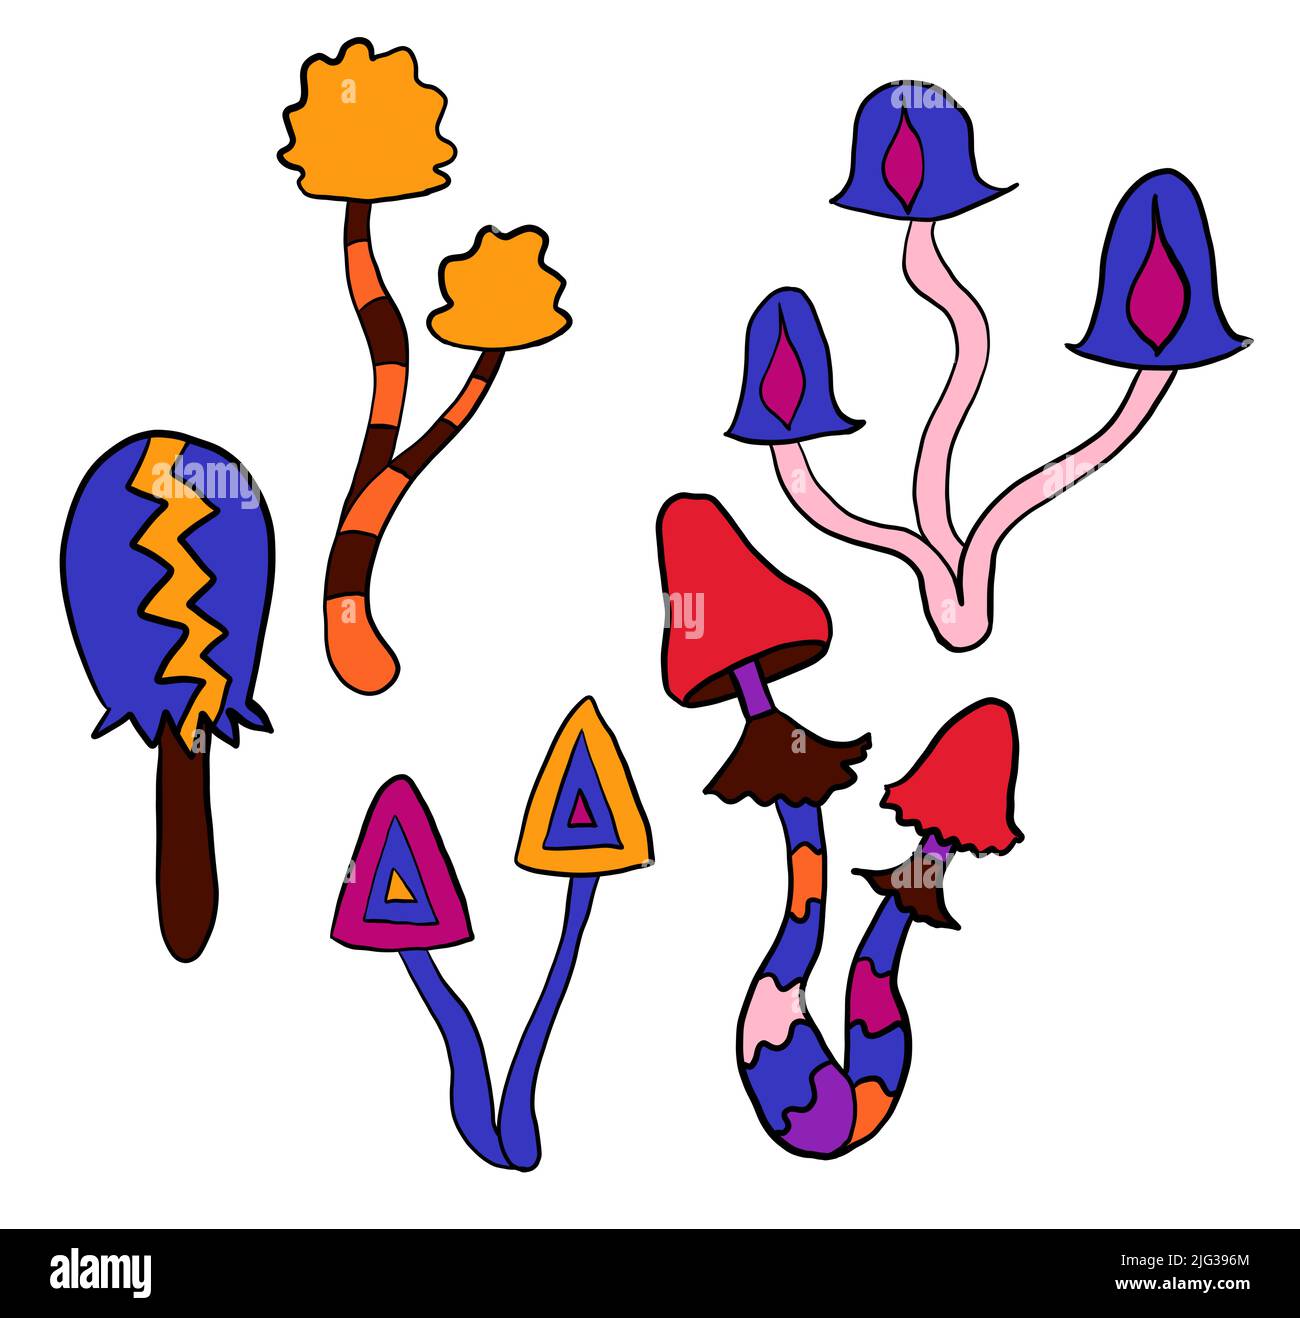 Handgezeichnete Cliparts-Illustration mit Hippie-Groovy-Pilzen in orange-violett-blau-roten Farben. Retro Vintage 1960s 1970s Stil, trippy wild hellen Hintergrund mit Halluzination hypnotischen Elementen Stockfoto